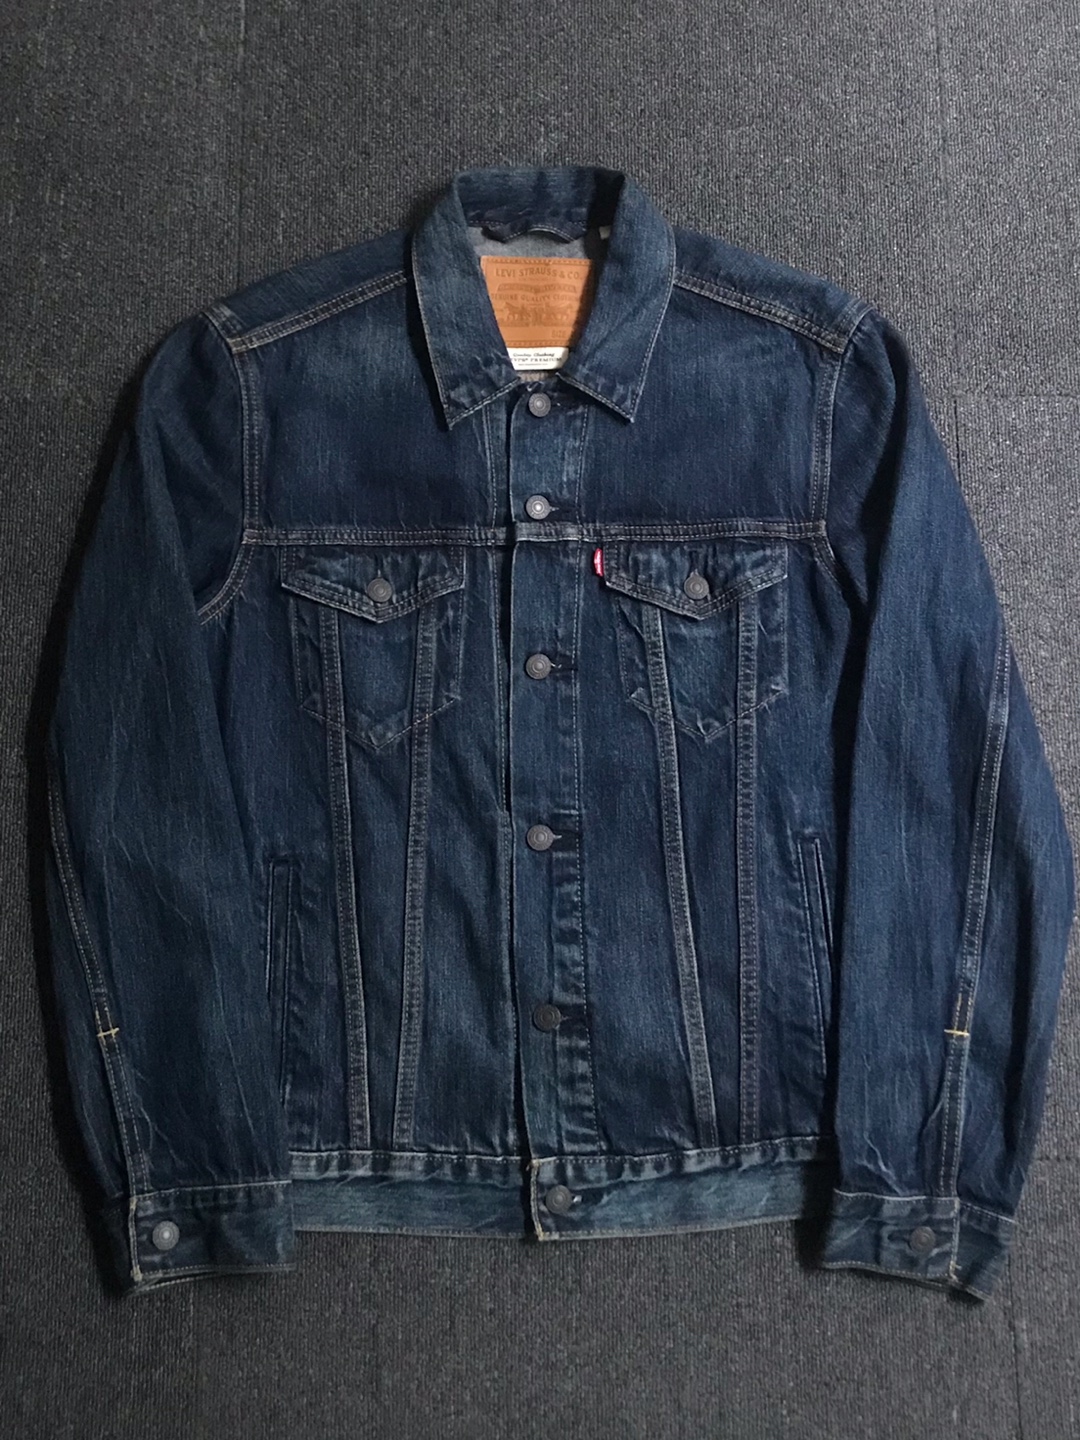 levis premium cotton/lyocell denim trucker jacket (M size, ~103 추천)